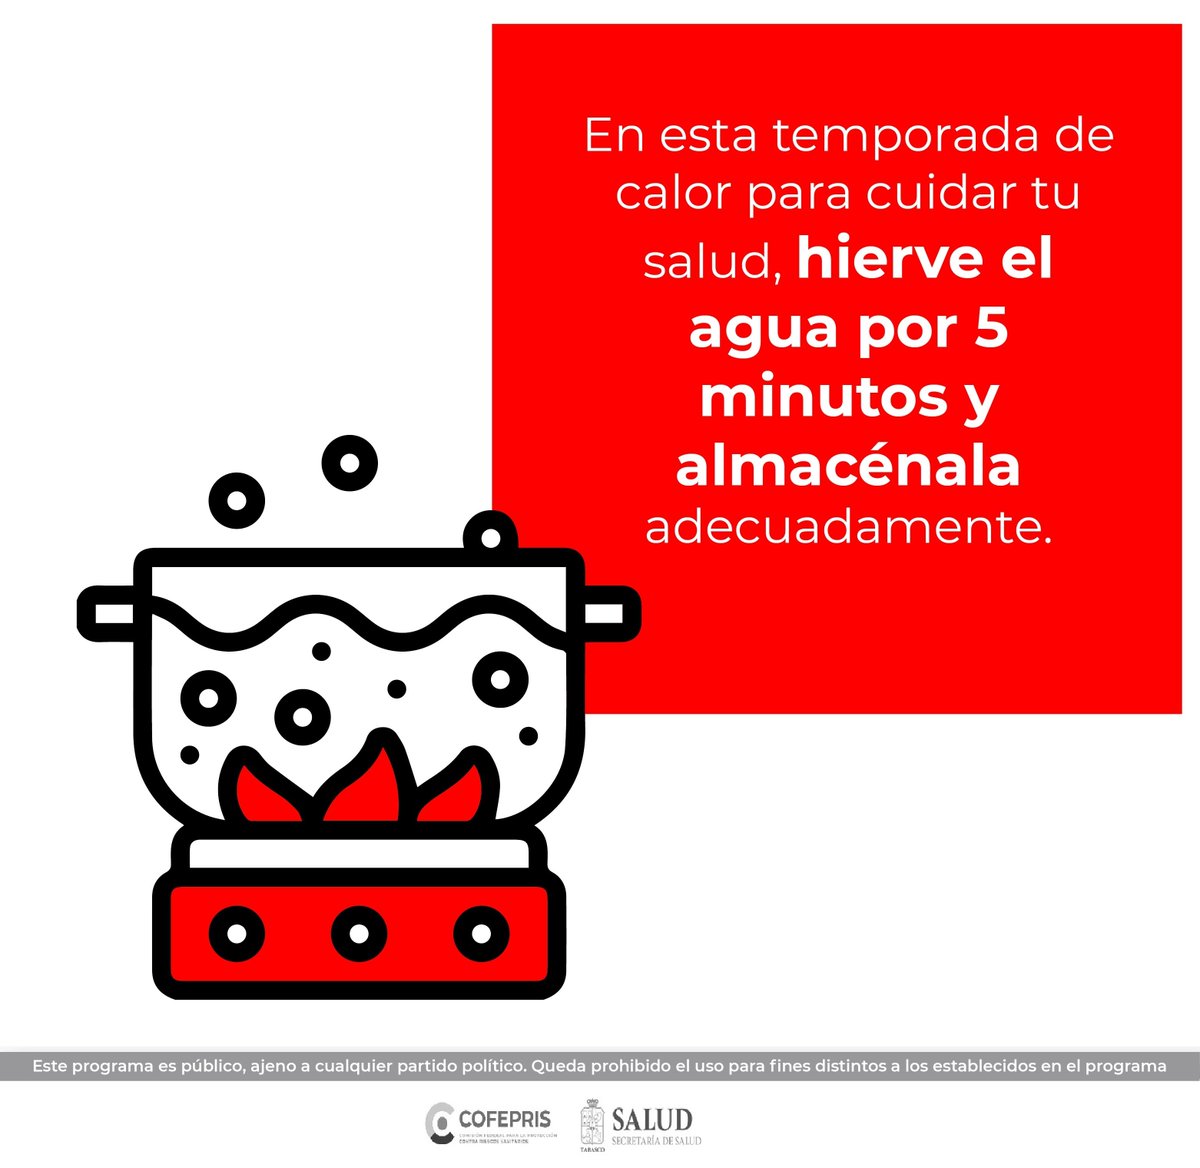 En esta #TemporadaDeCalor, extrema precauciones en la higiene y conservación de los alimentos. #CuidarteEsLoMejor